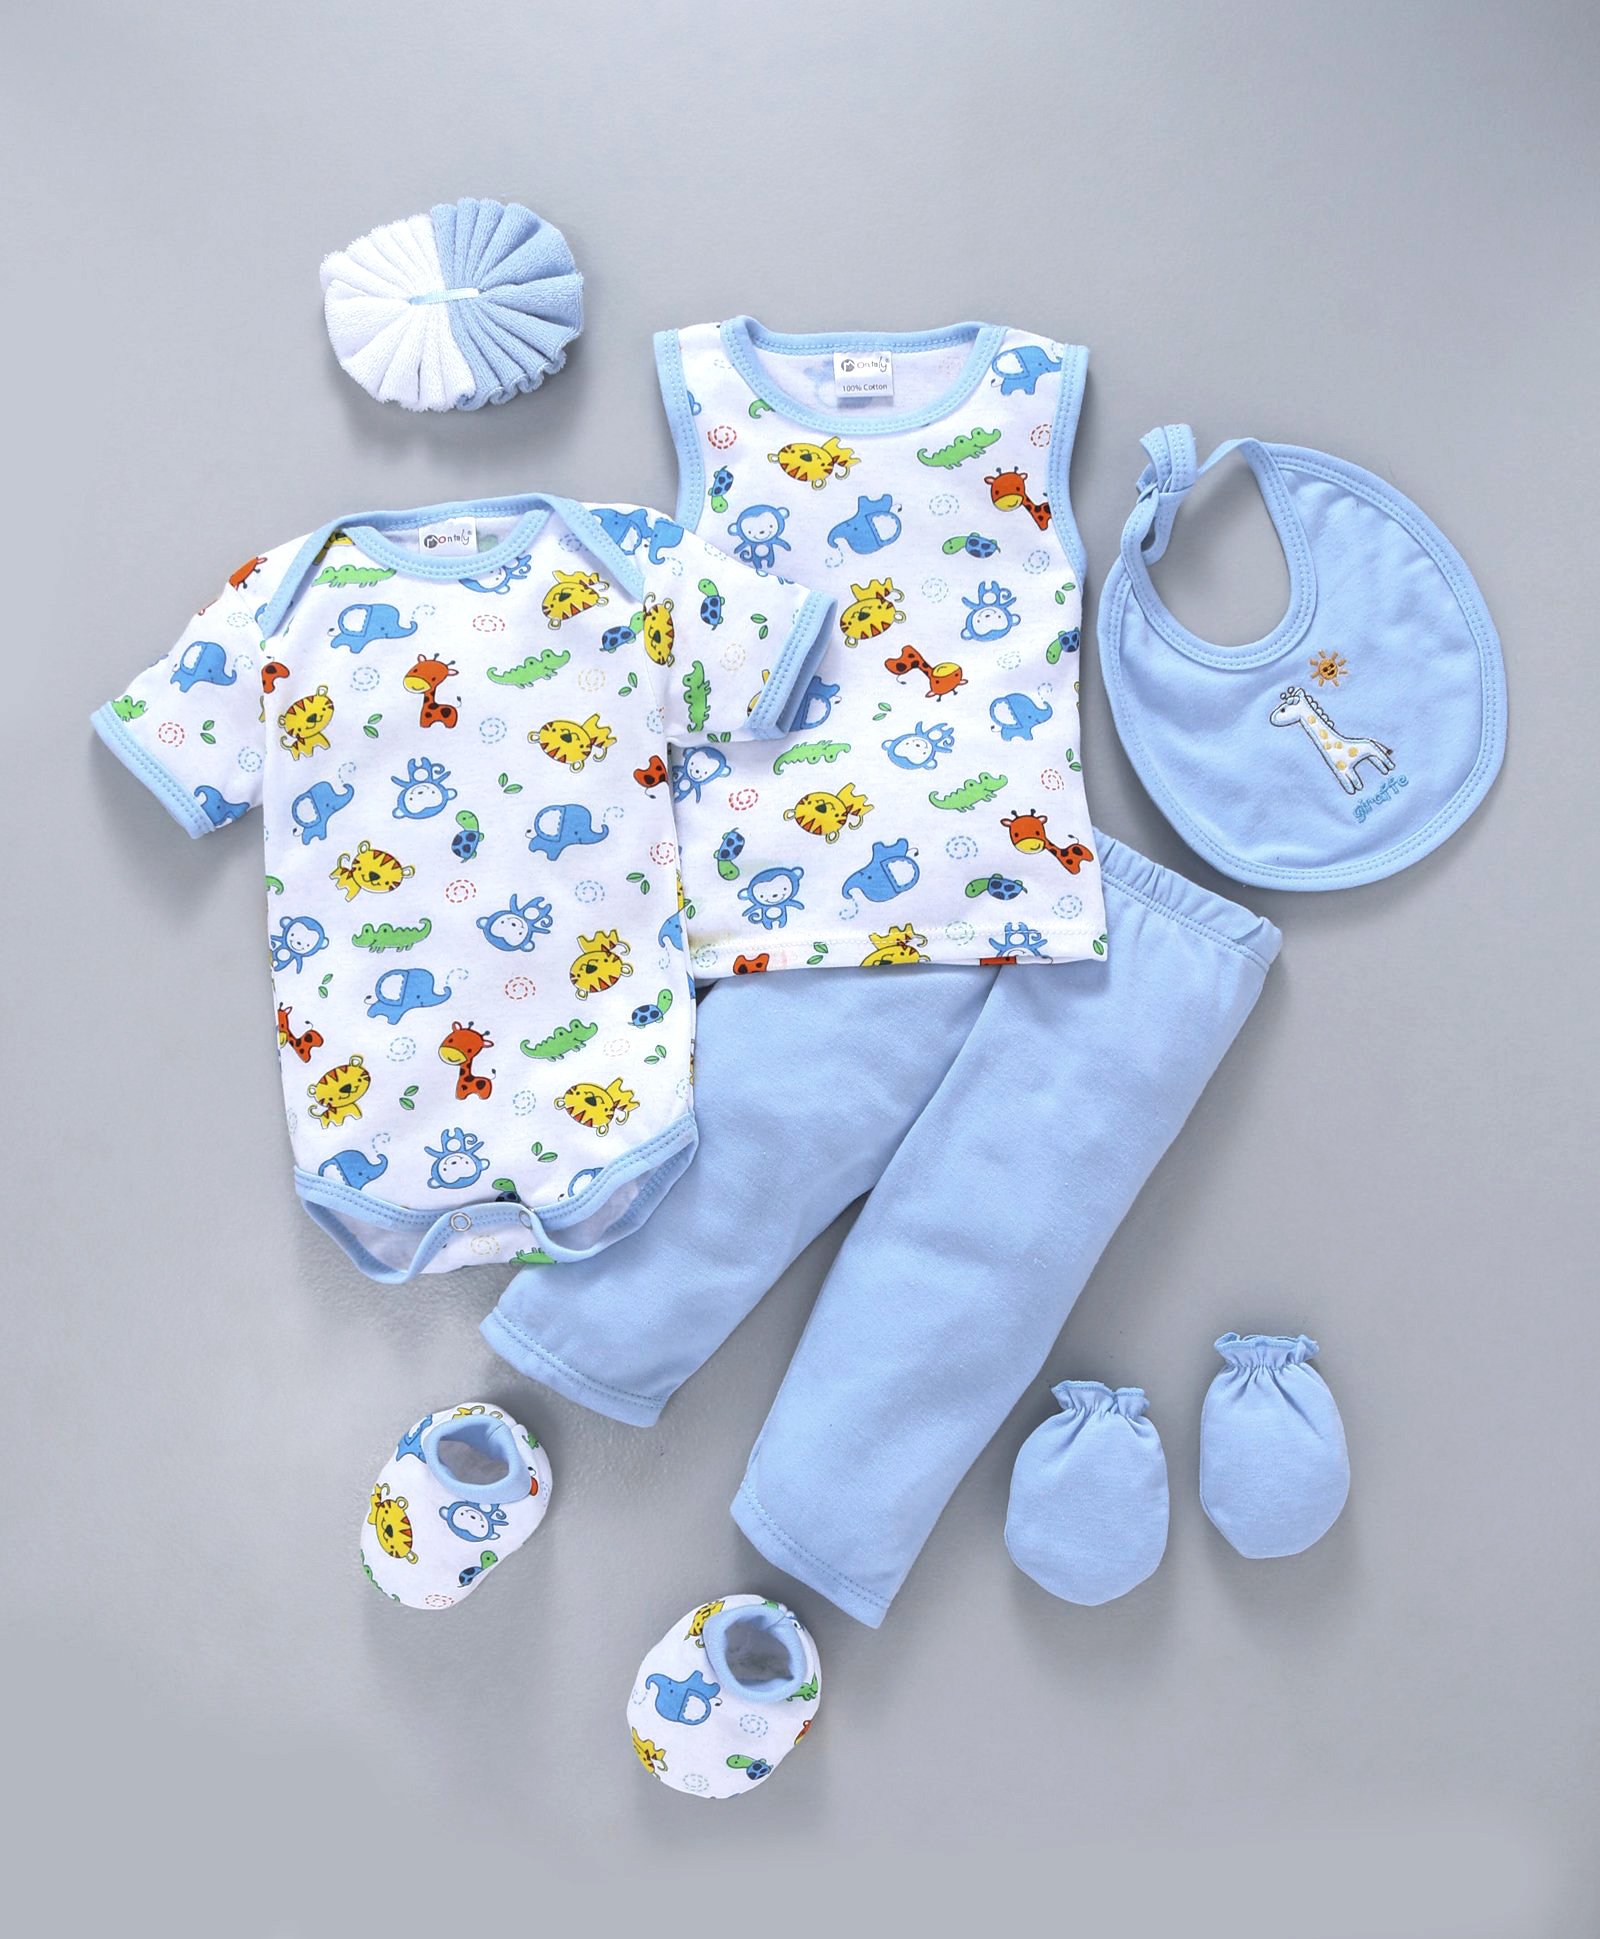 firstcry newborn baby boy clothes